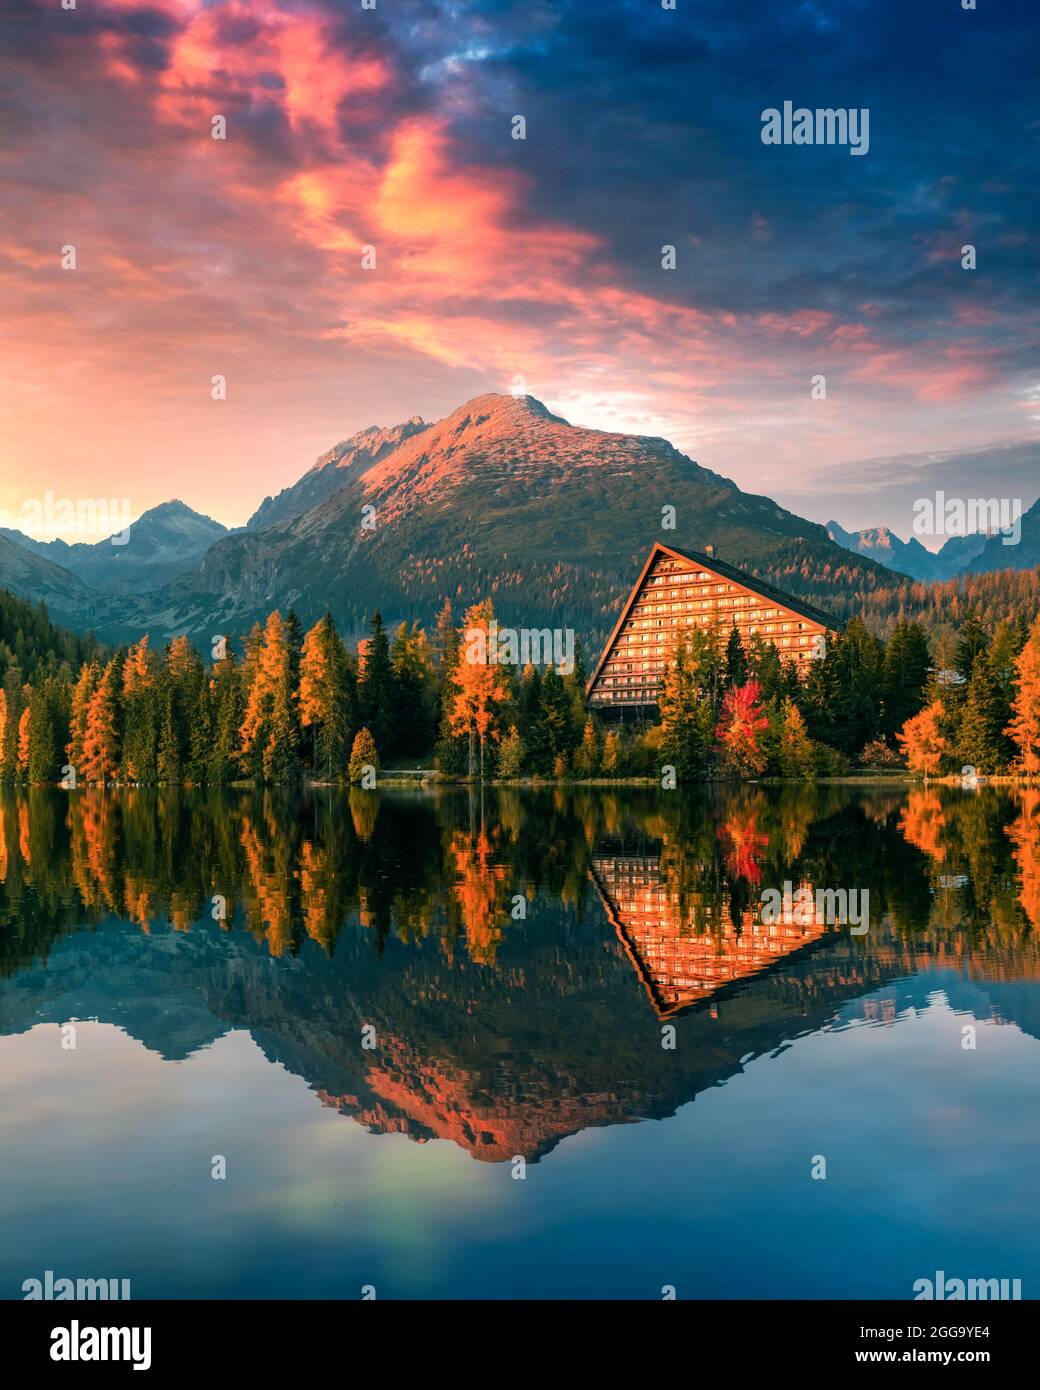 Malerische Herbstansicht des Strbske pleso Sees im Nationalpark hohe Tatra, Slowakei. Klares Wasser mit Reflexen von orangefarbener Lärche und hohen Bergen im Hintergrund. Landschaftsfotografie Stockfoto